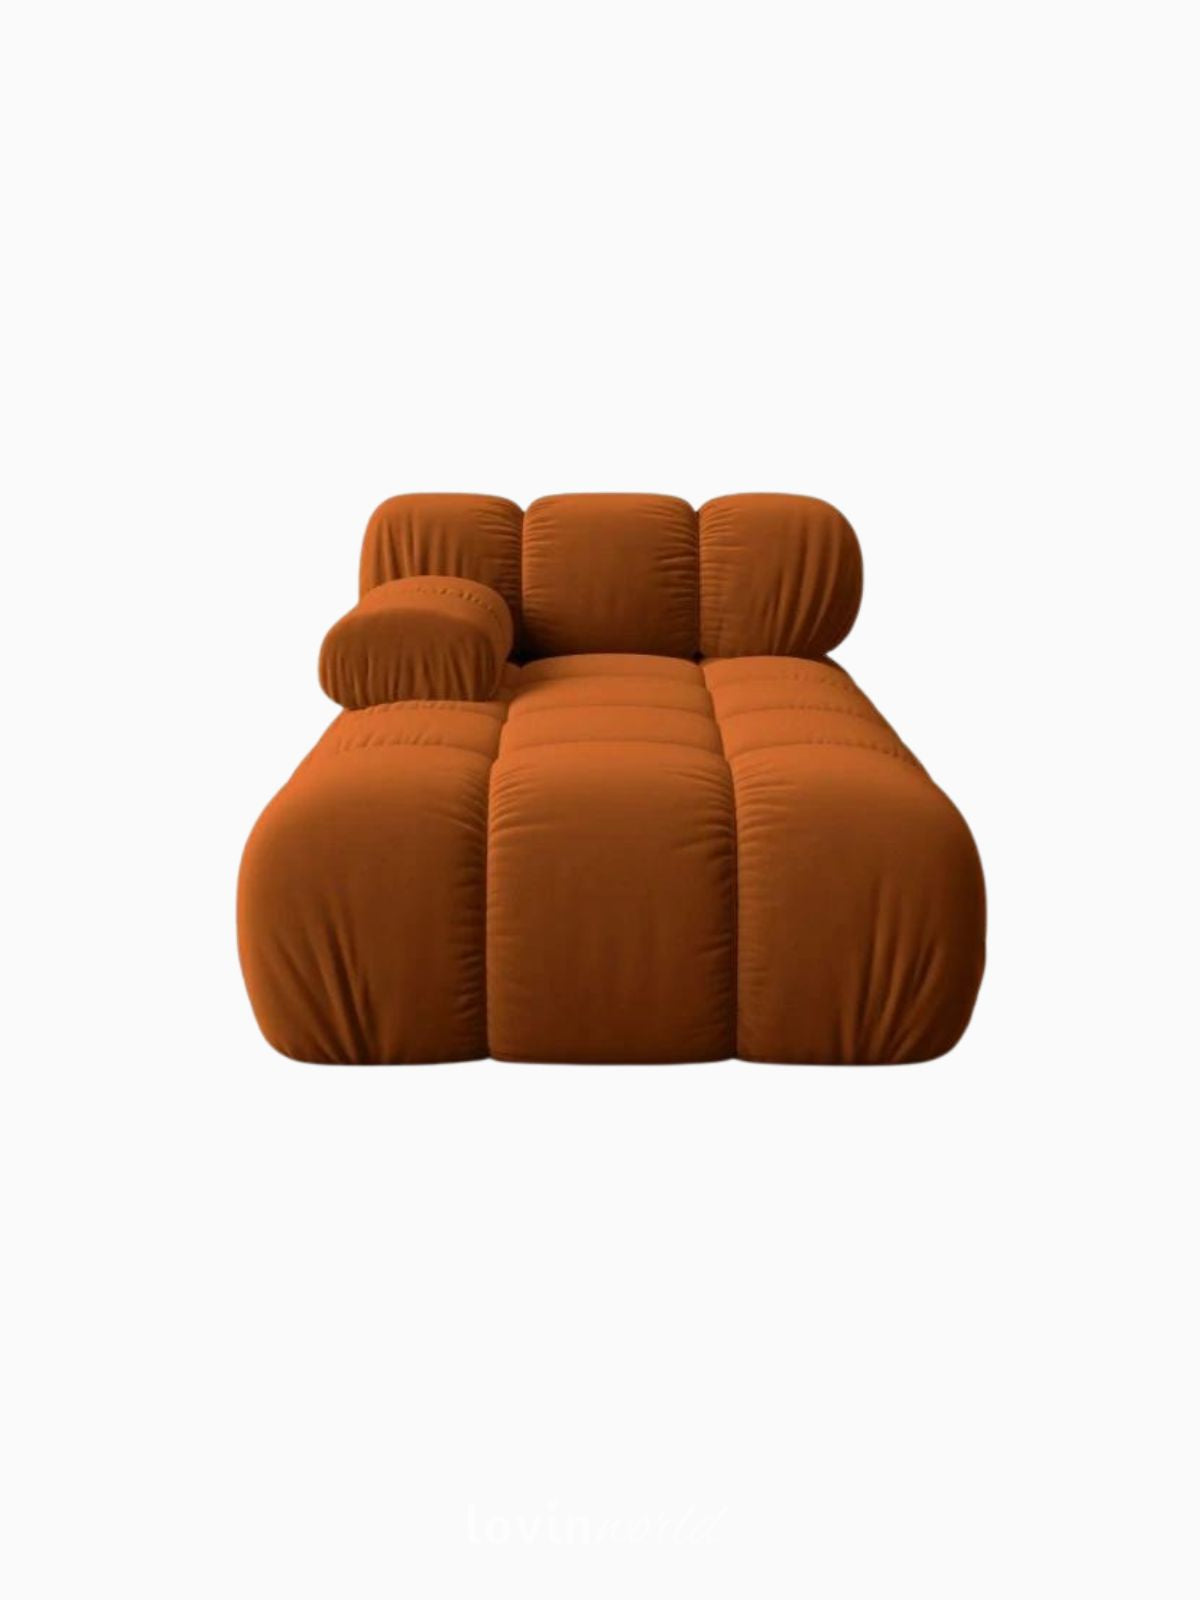 Divano modulare sinistro Bellis in velluto, colore arancione-1